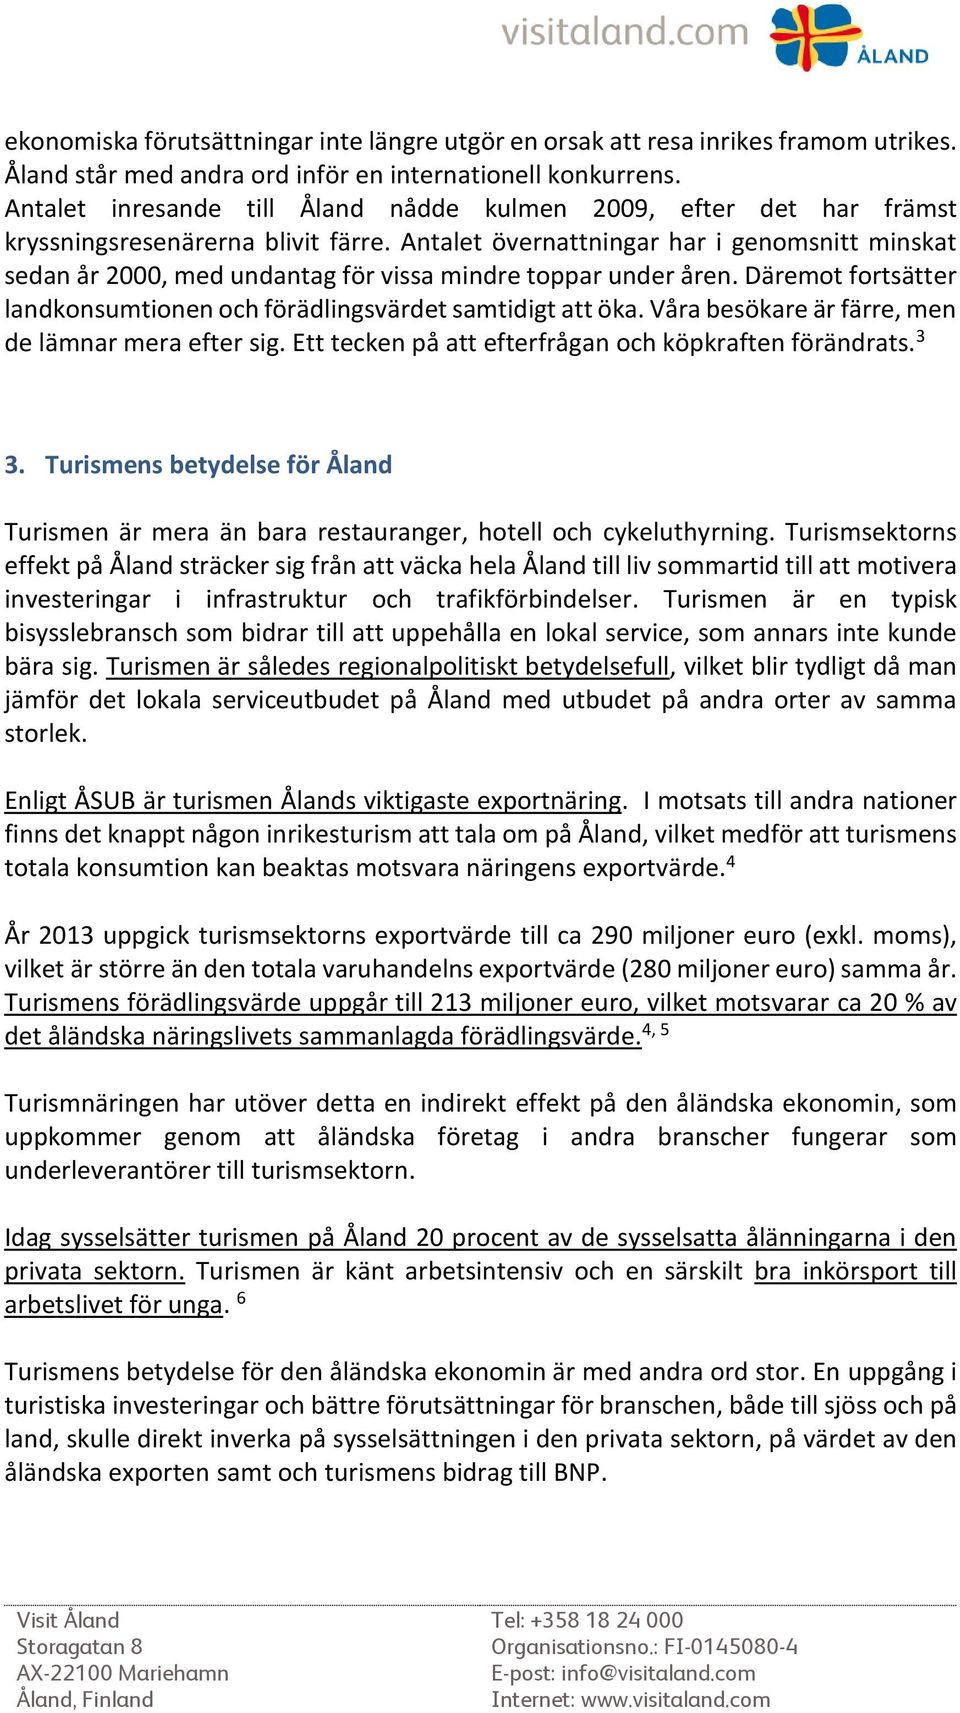 Rapport om turismen på Åland - PDF Gratis nedladdning